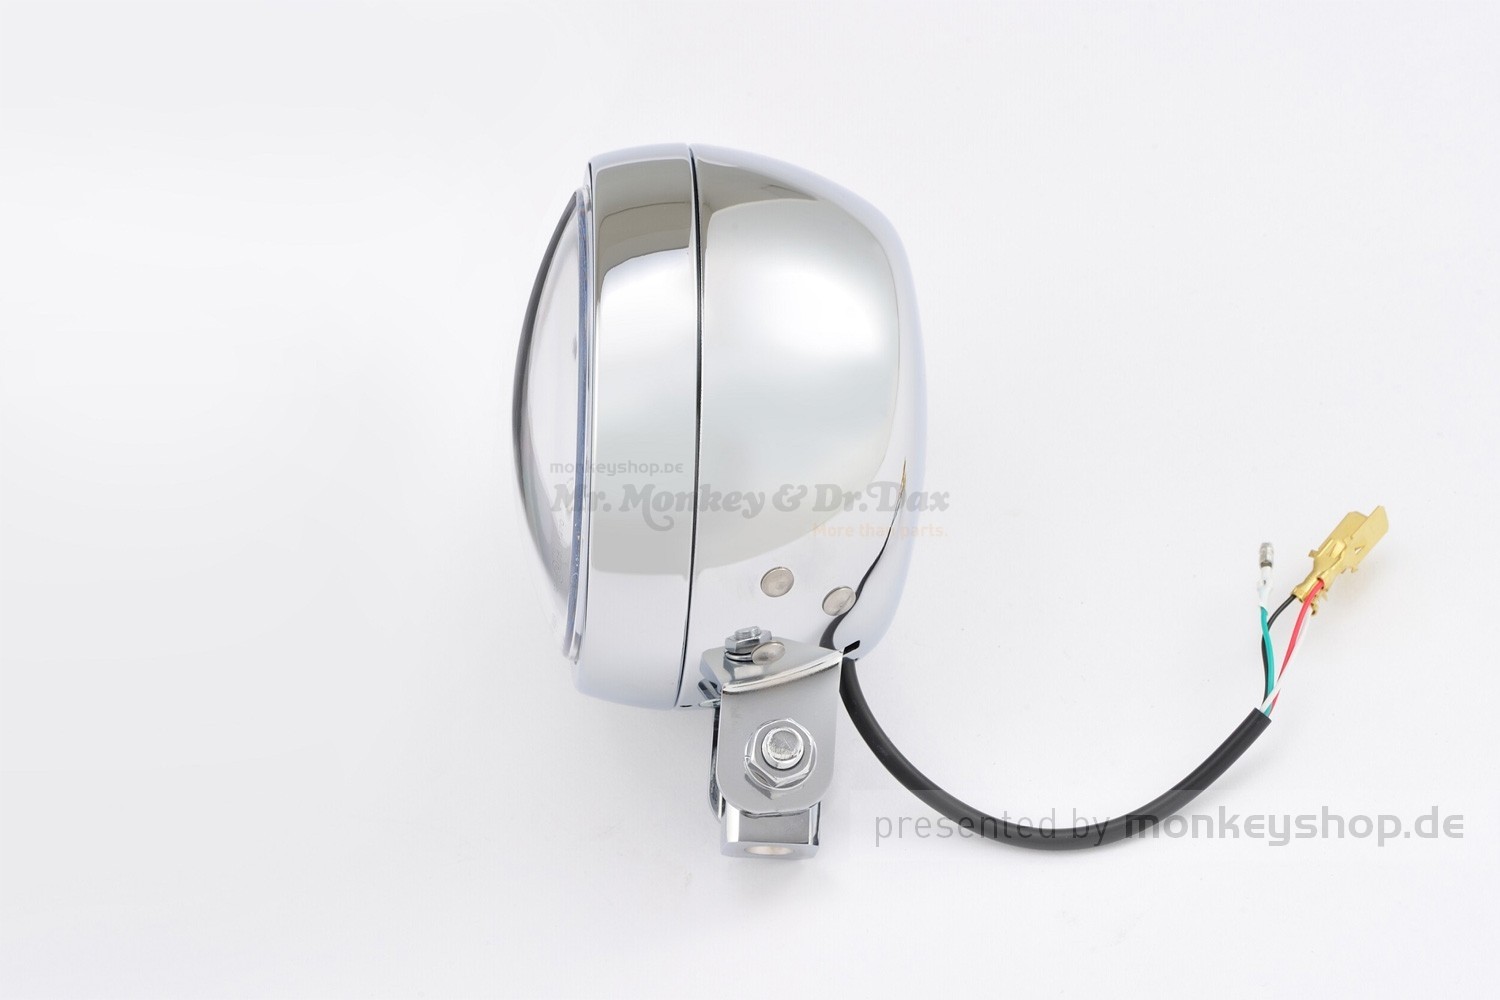 2er Set Hauptscheinwerfer W188 LED, dynm. Blinker, Tagfahrlicht,  Positionslicht, Abblendlicht, Fernlicht